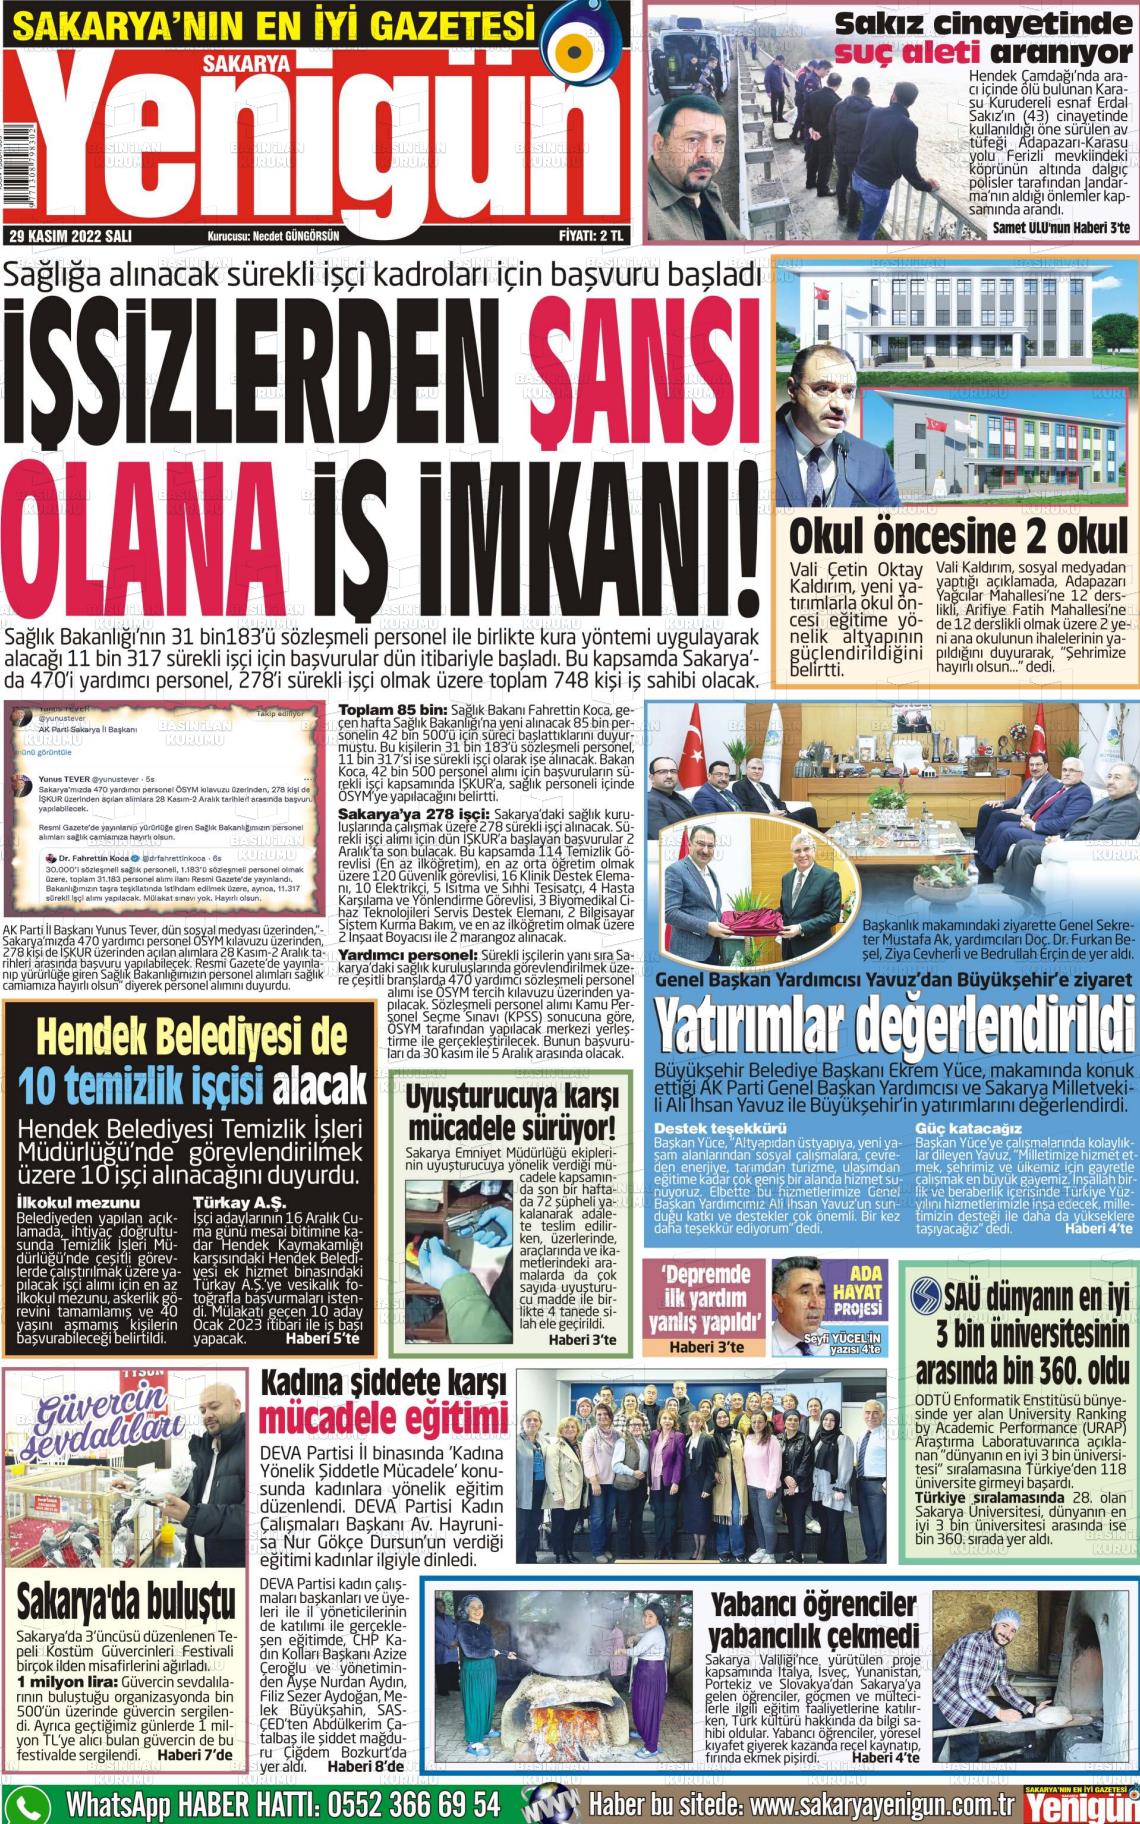 29 Kasım 2022 Sakarya Yenigün Gazete Manşeti